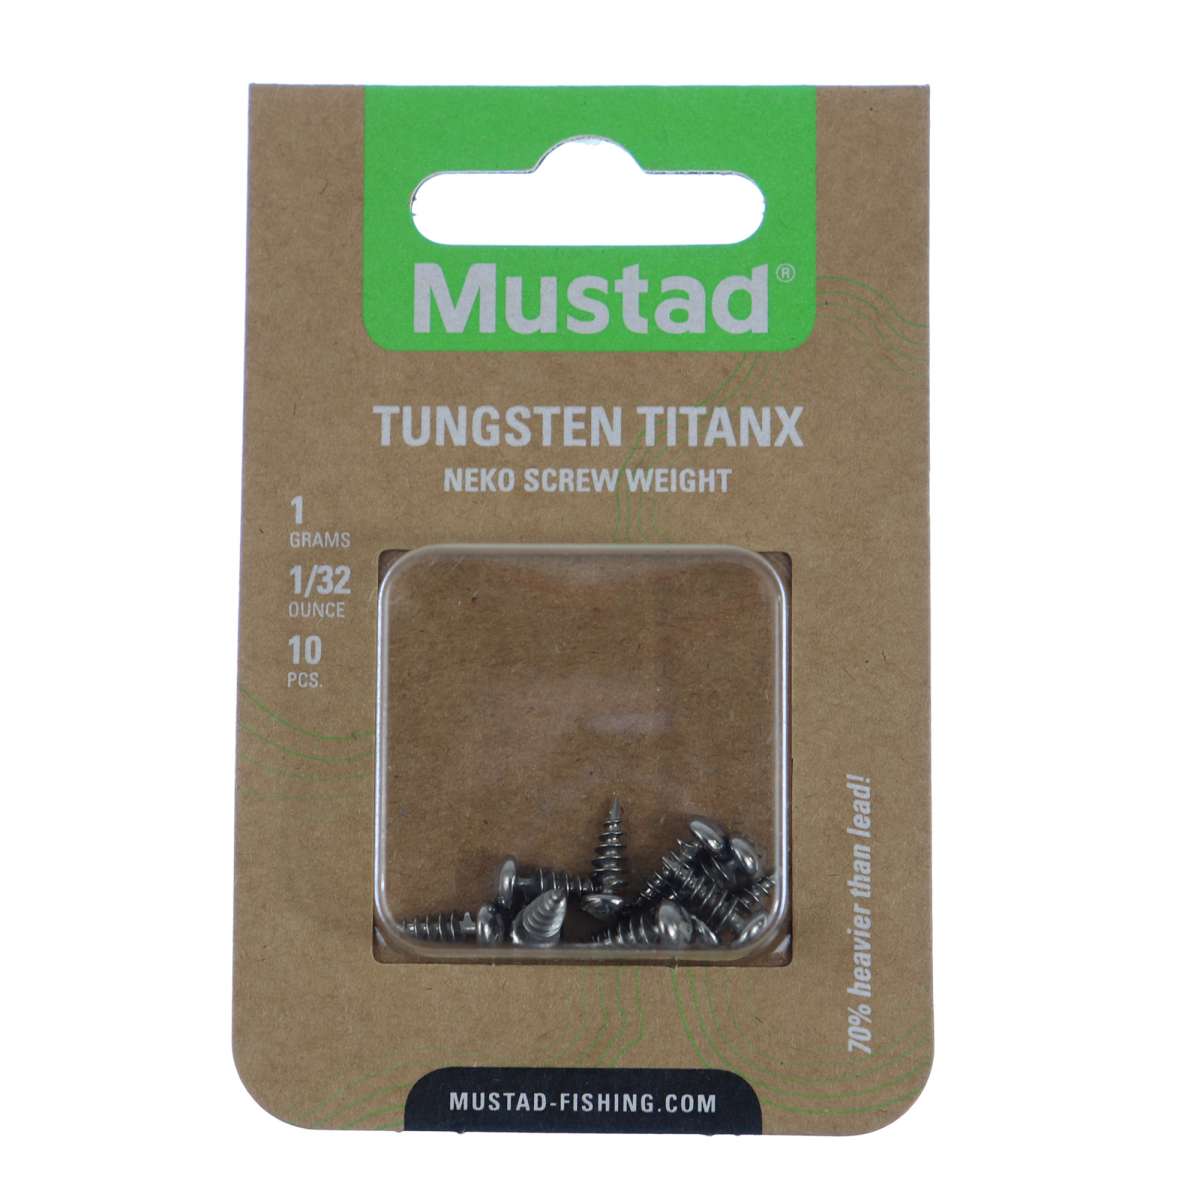 Mustad Tungsten TitanX Neko Screw Weights – Lures and Lead